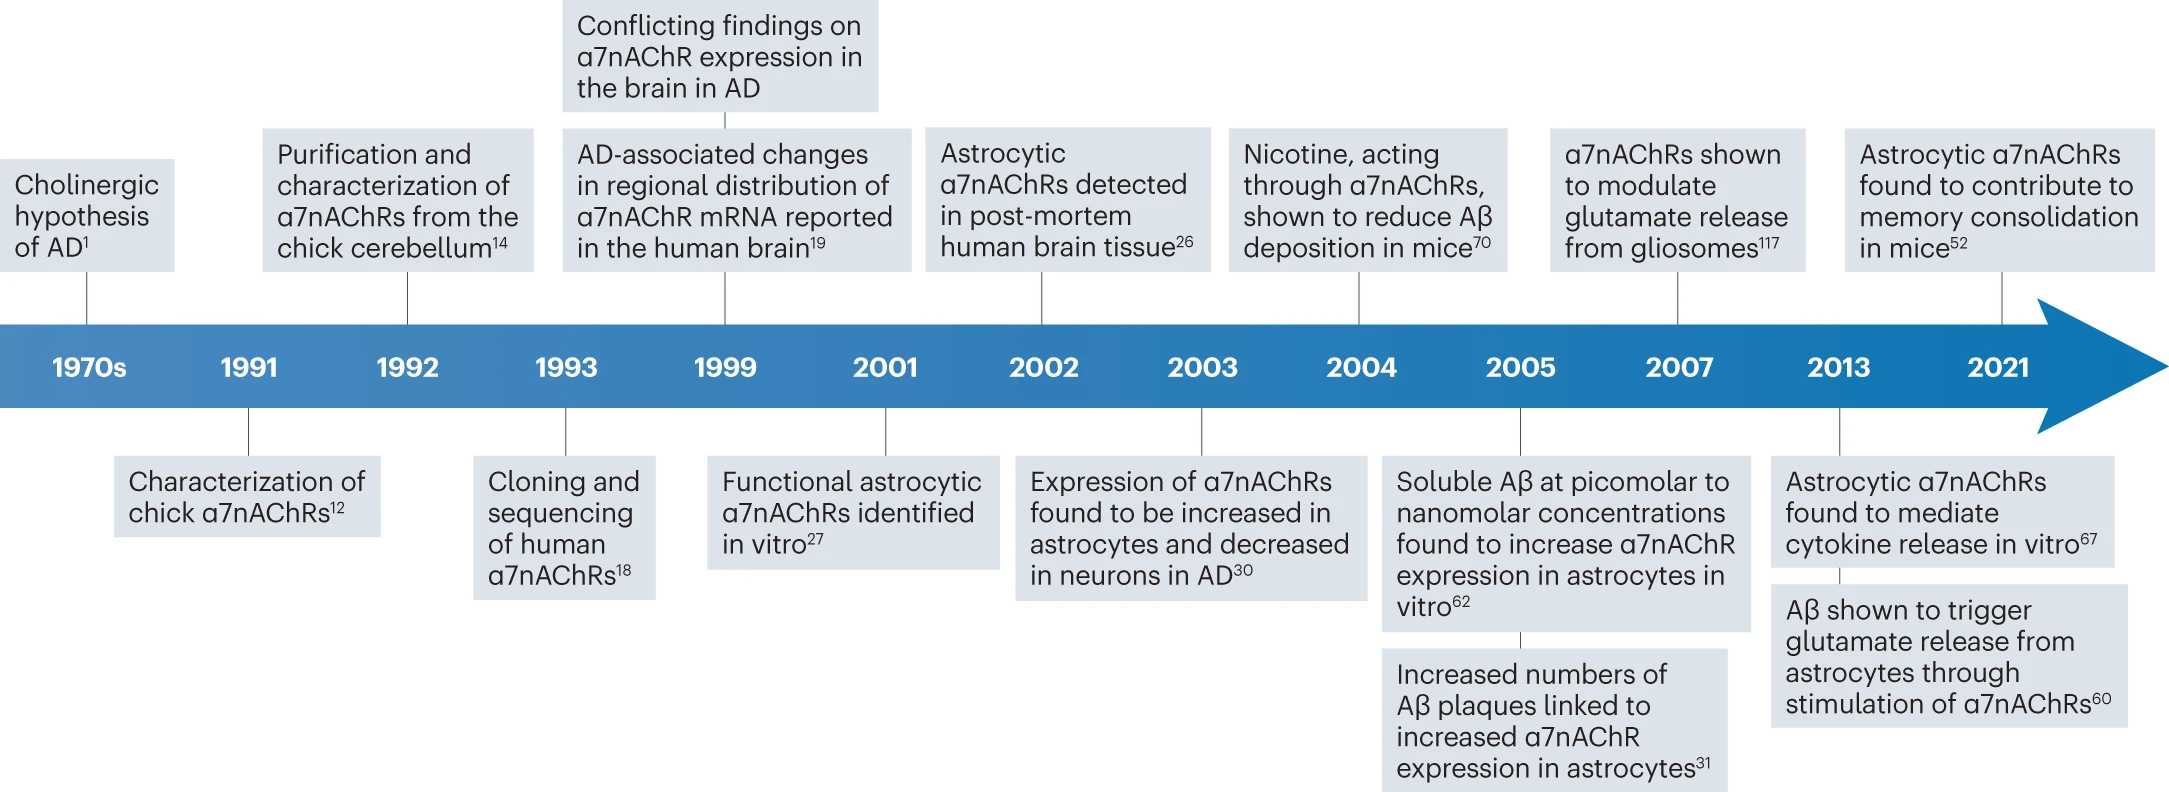 Астроцитарный рецептор как новый биомаркер для ранней диагностики болезни Альцгеймера